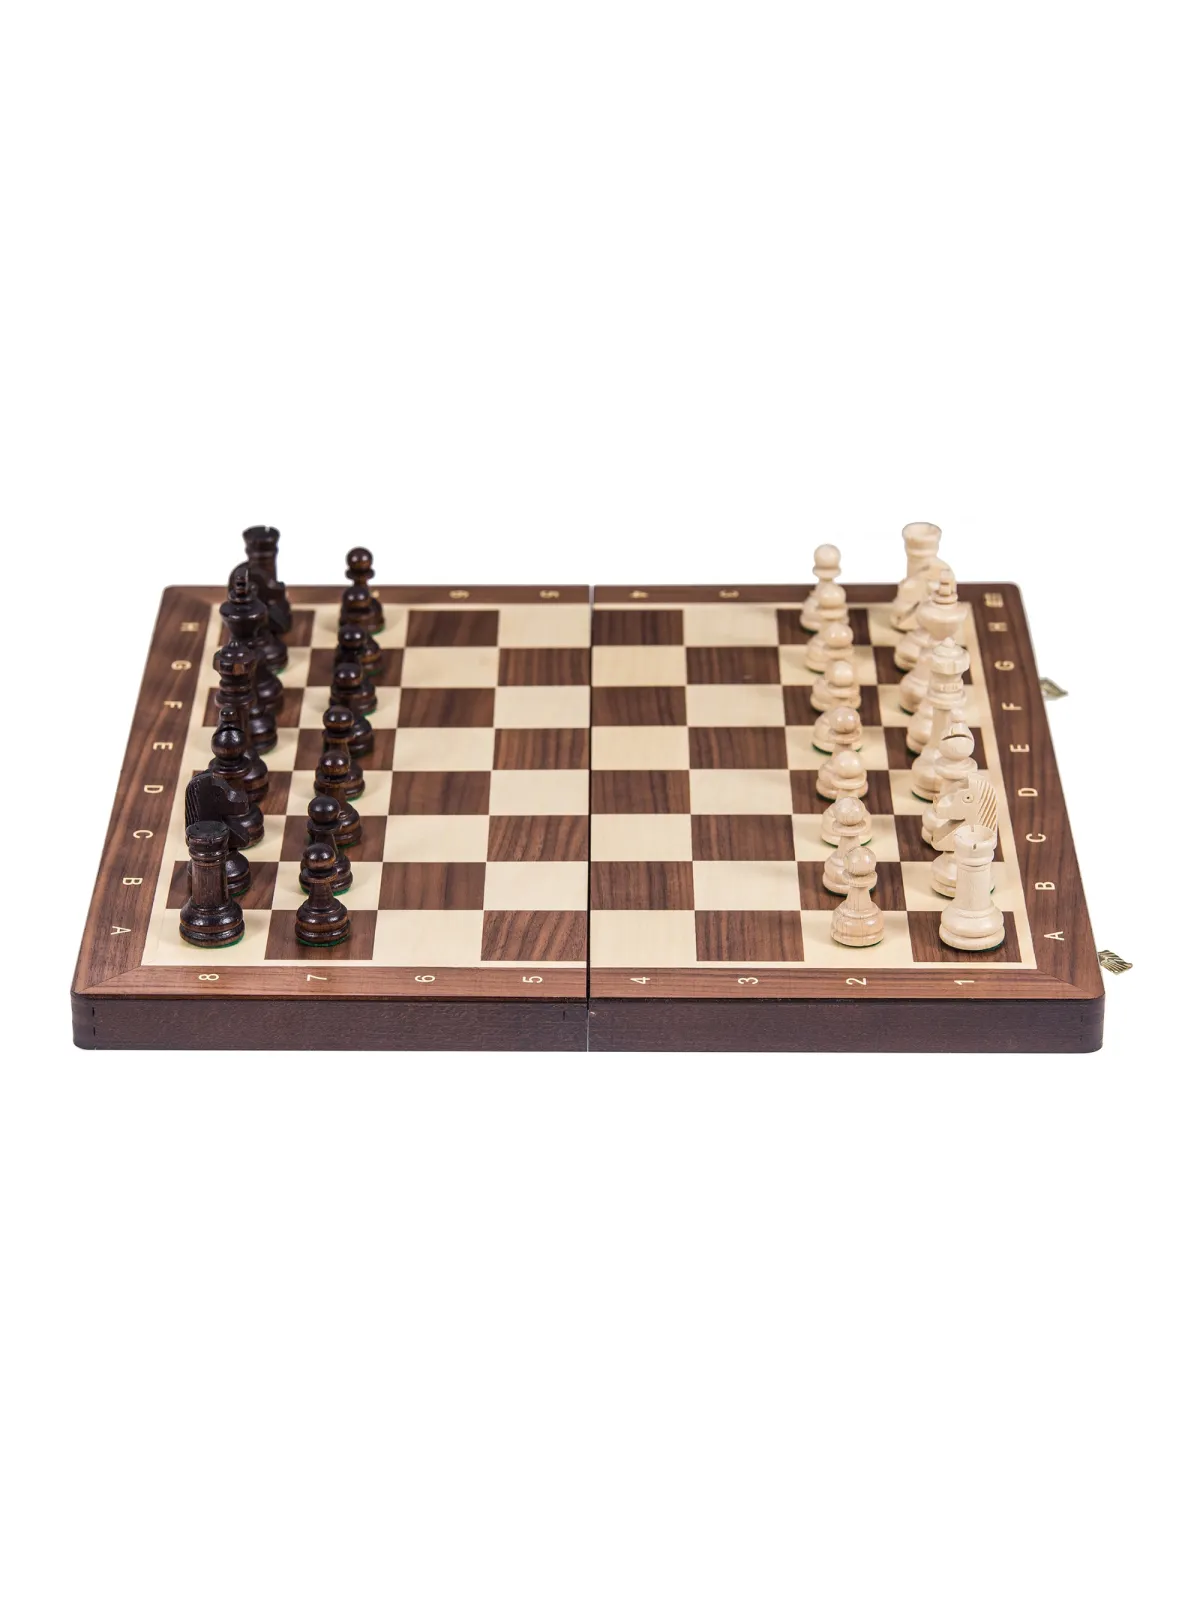 Schach Turnier Nr. 4 - Nuss